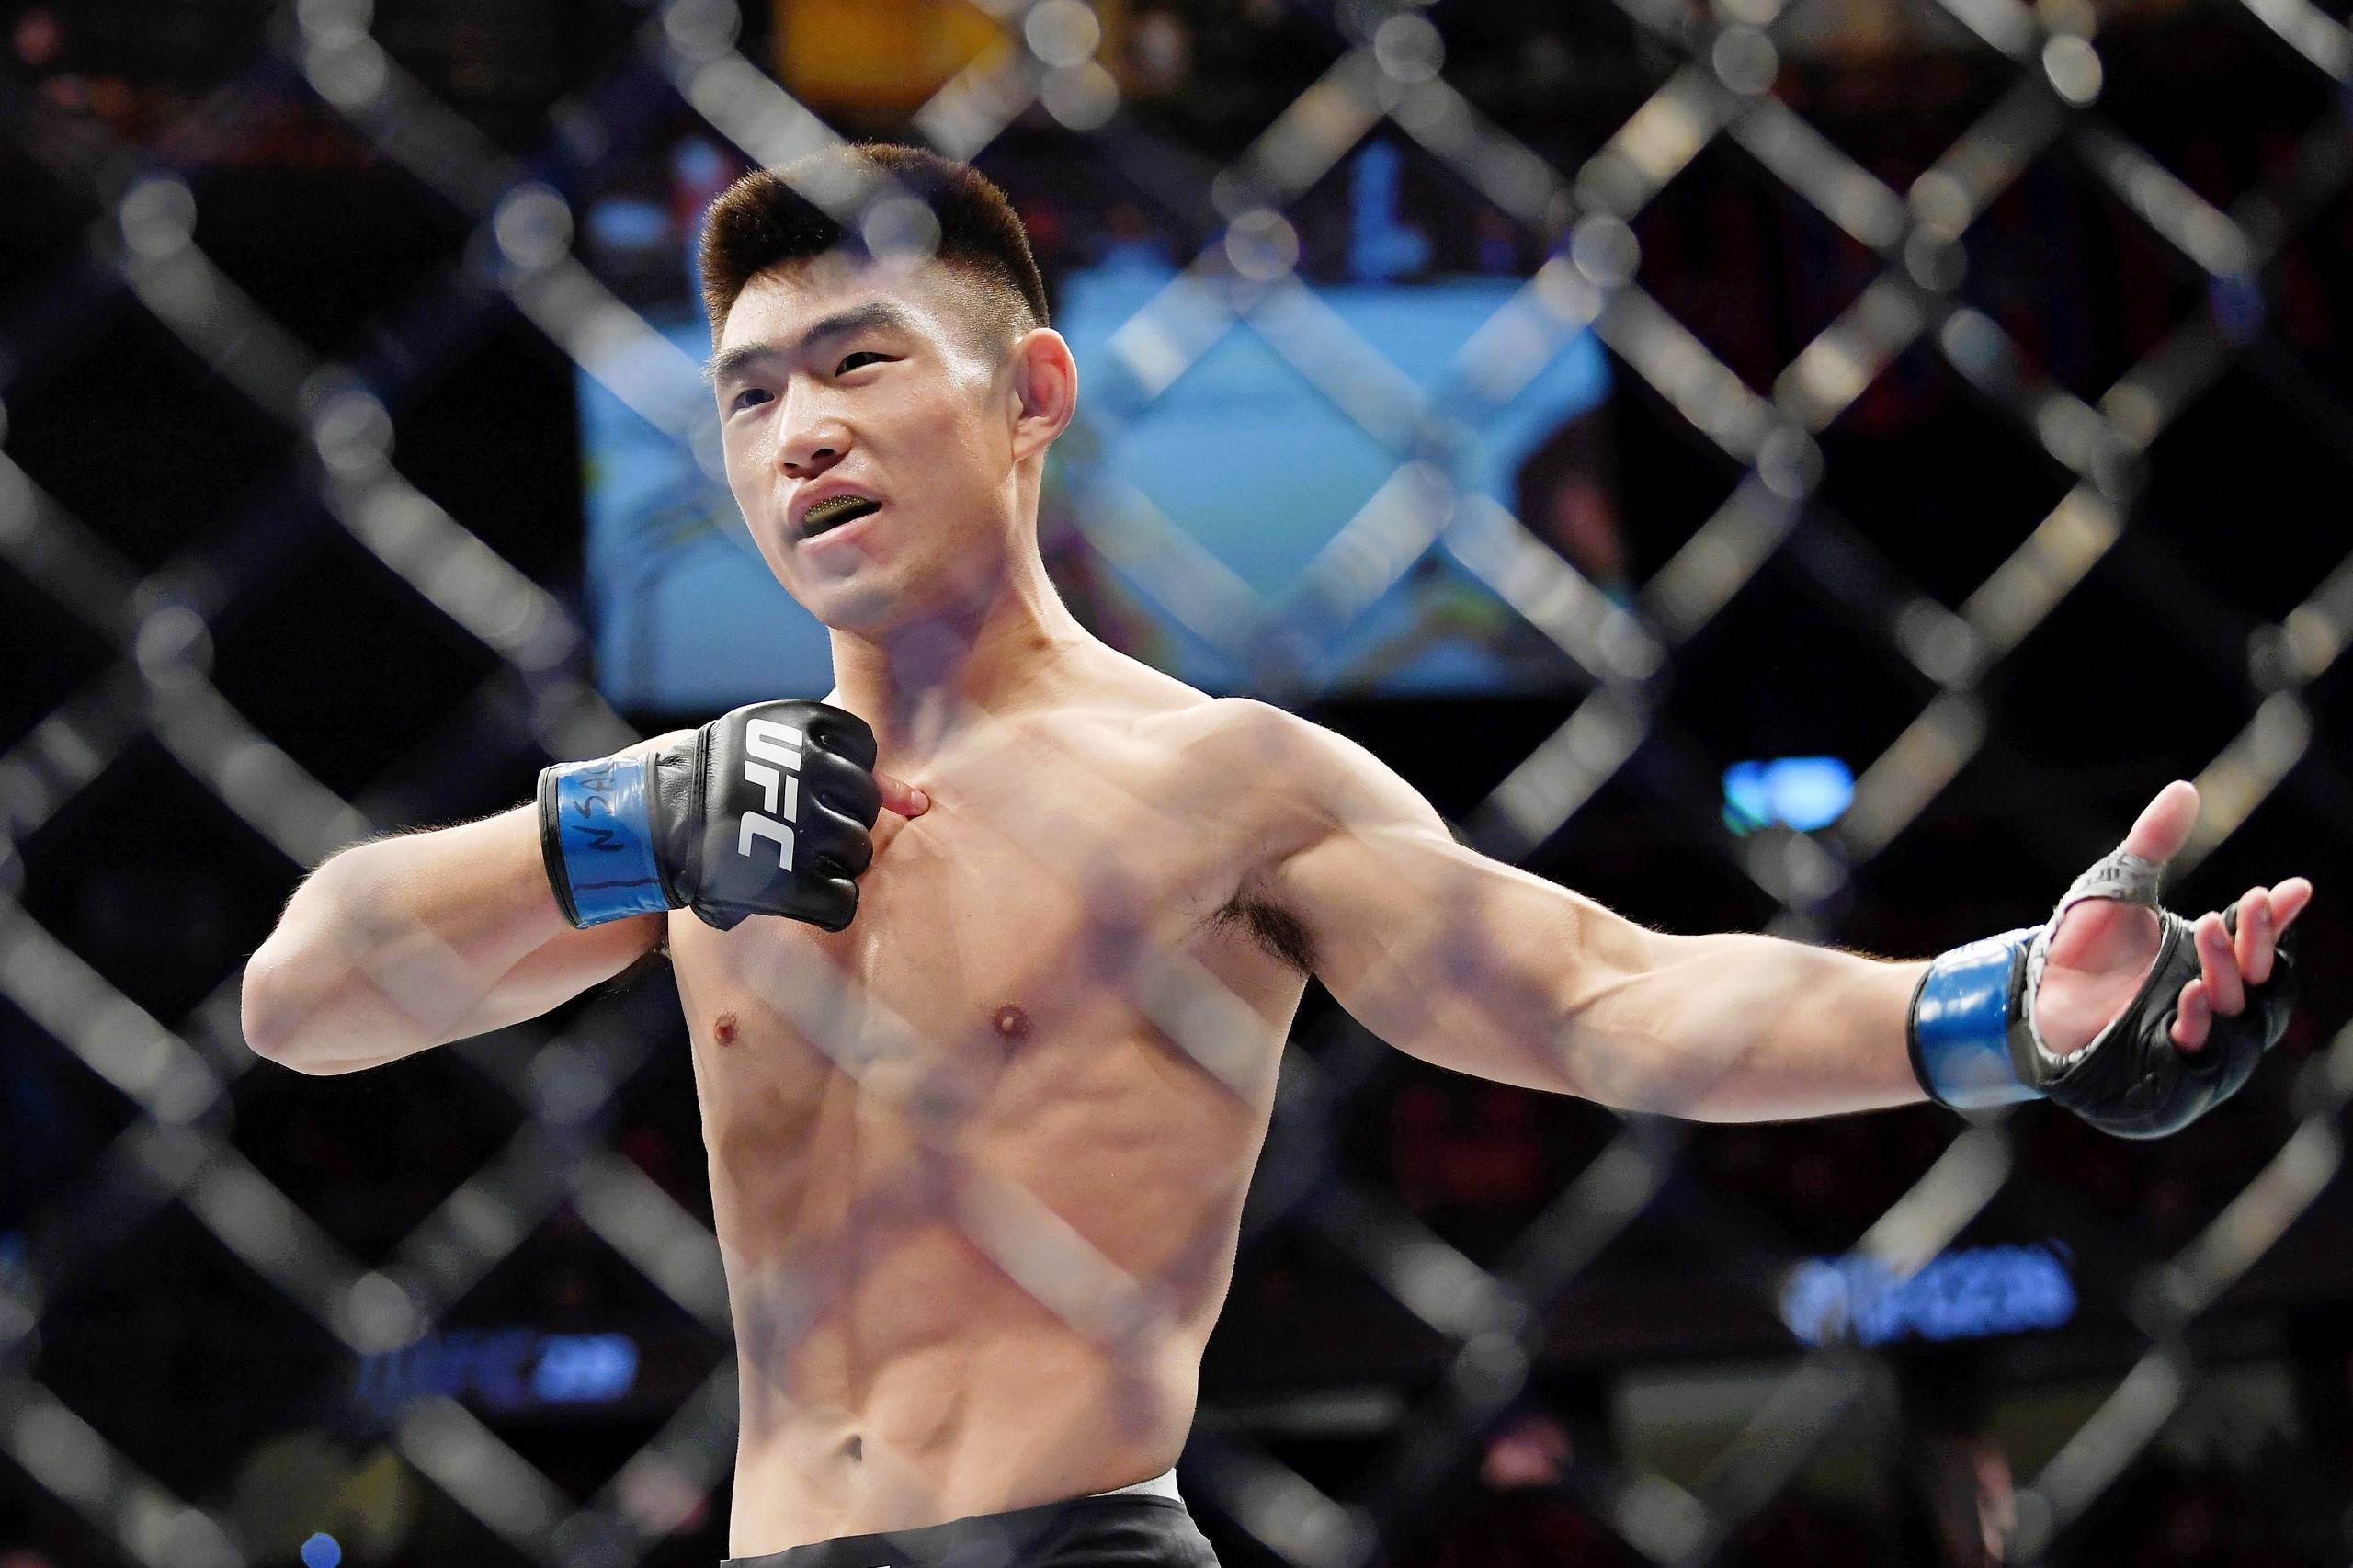 168娱乐-对话-三位中国选手出战UFC格斗之夜，宋亚东-一定拿下